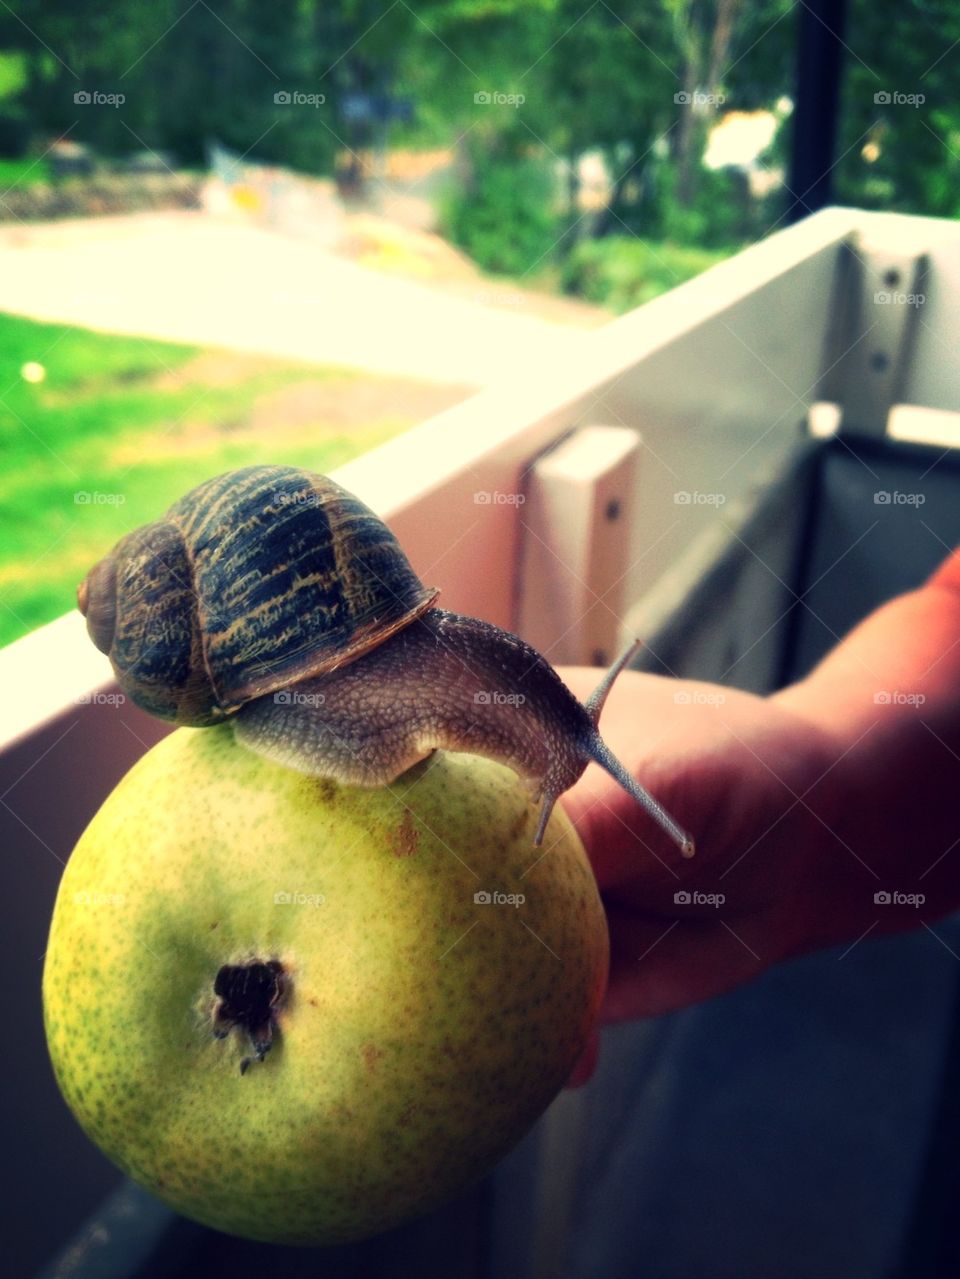 Snail on pear